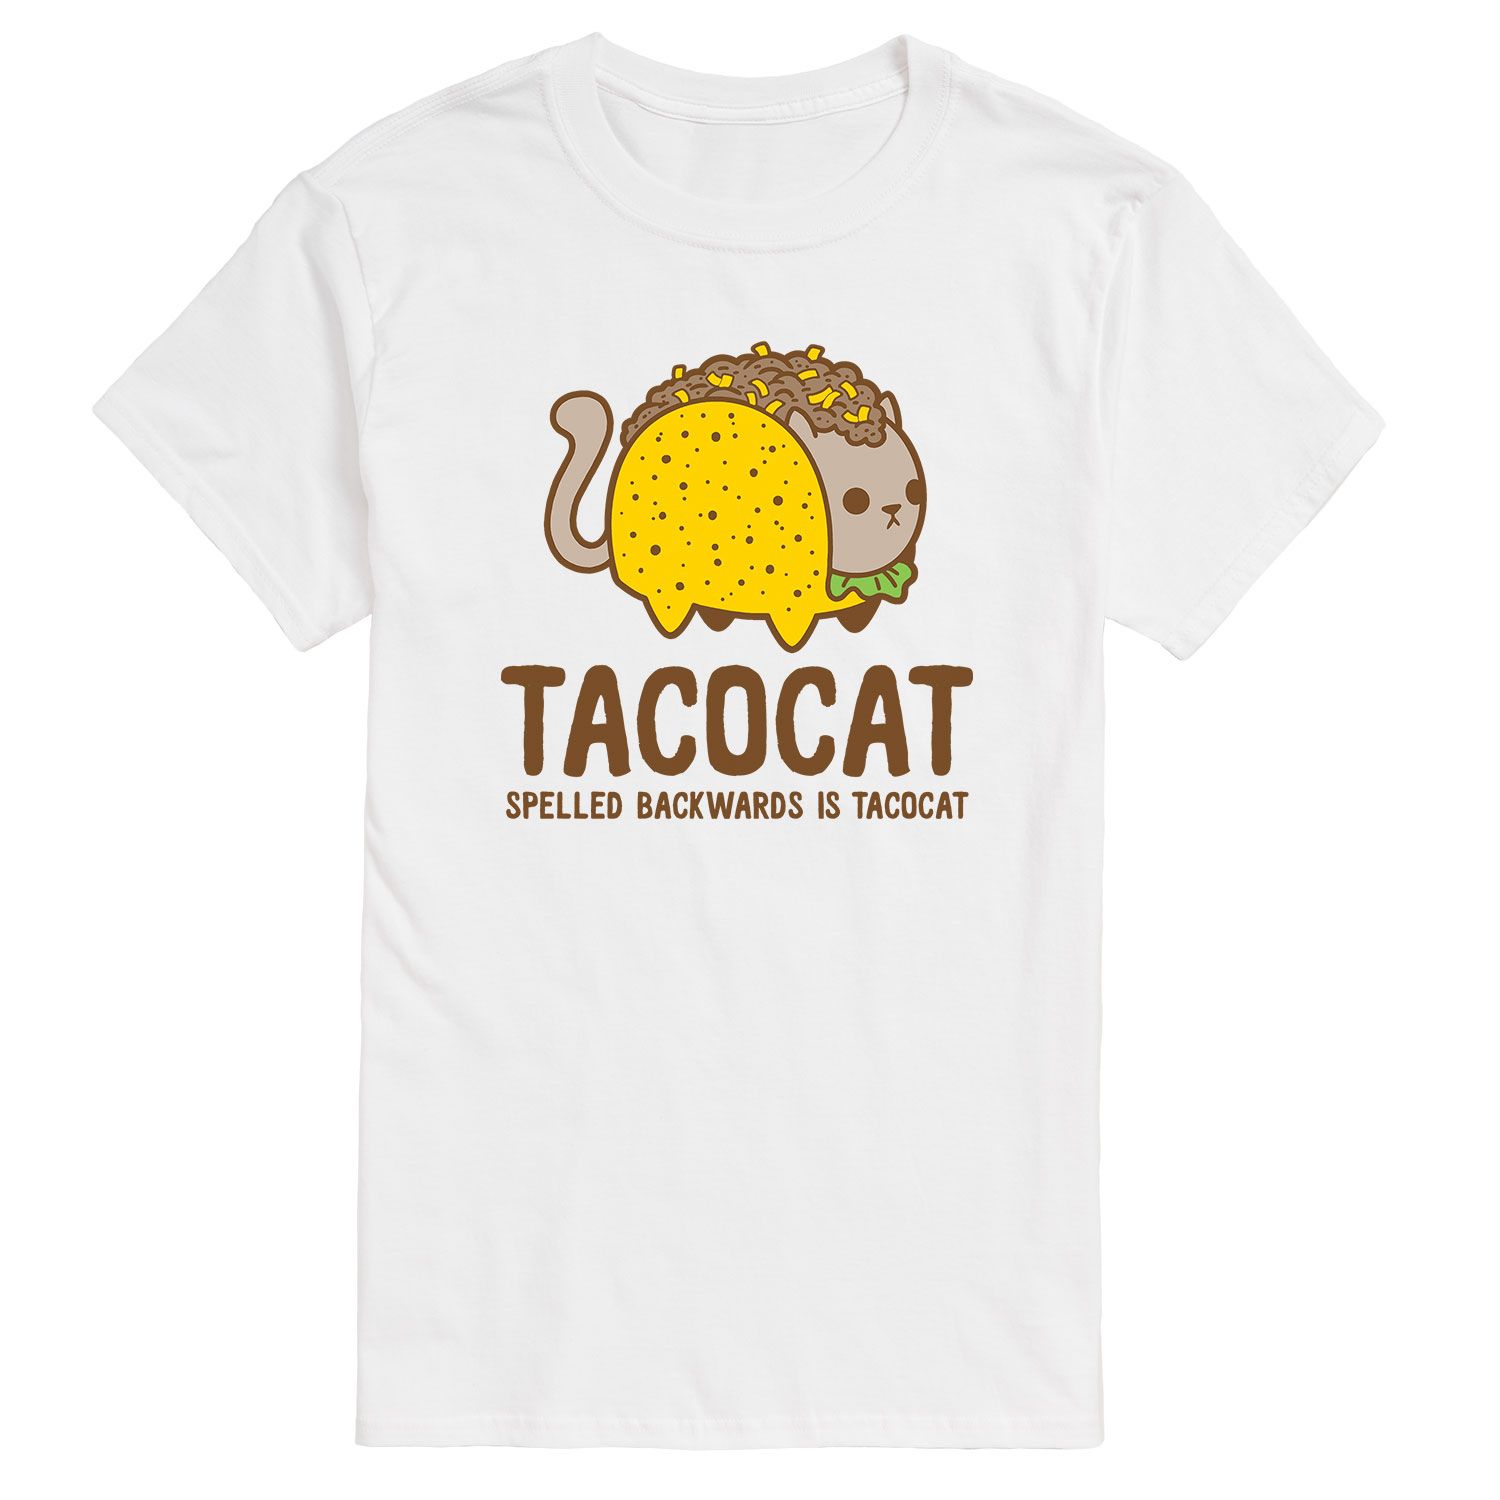 Мужская футболка Big & Tall Tacocat с обратным рисунком и надписью License